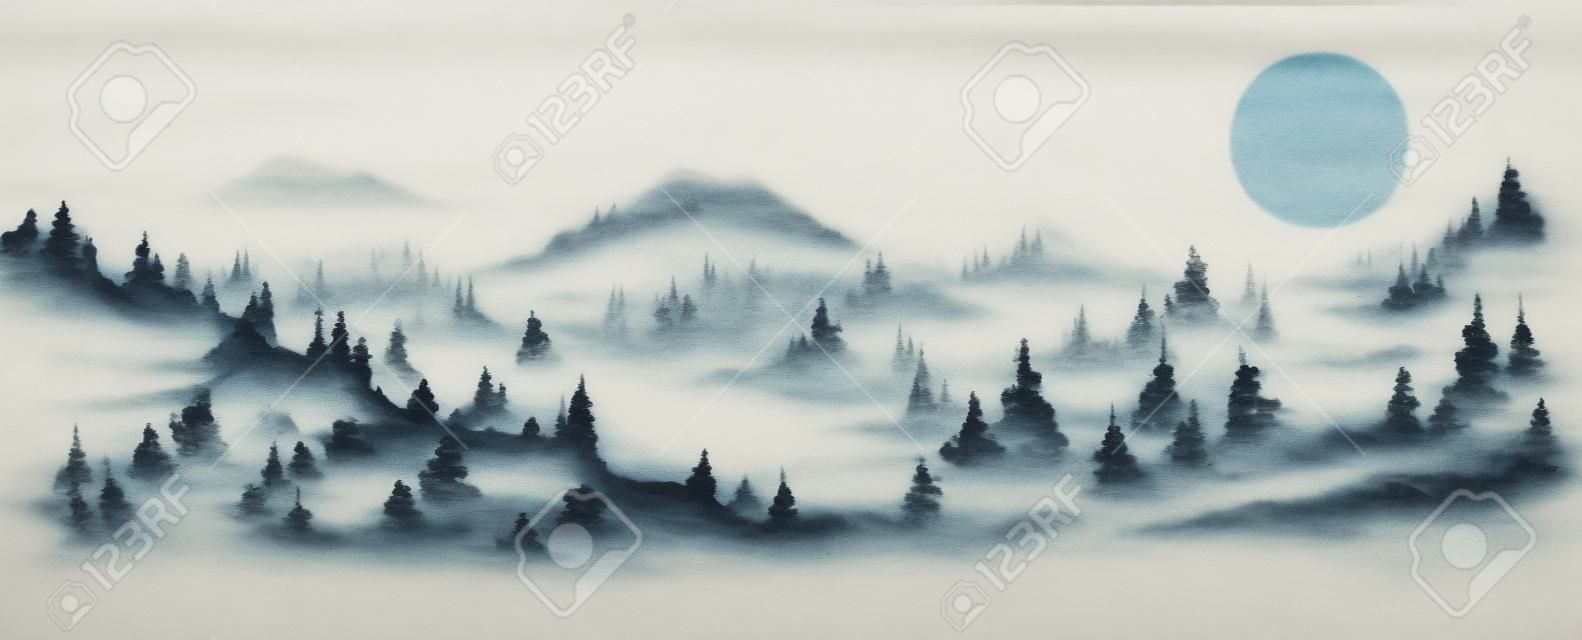 Neblige Waldgebirgslandschaft. traditionelle orientalische tuschemalerei sumi-e, u-sin, go-hua